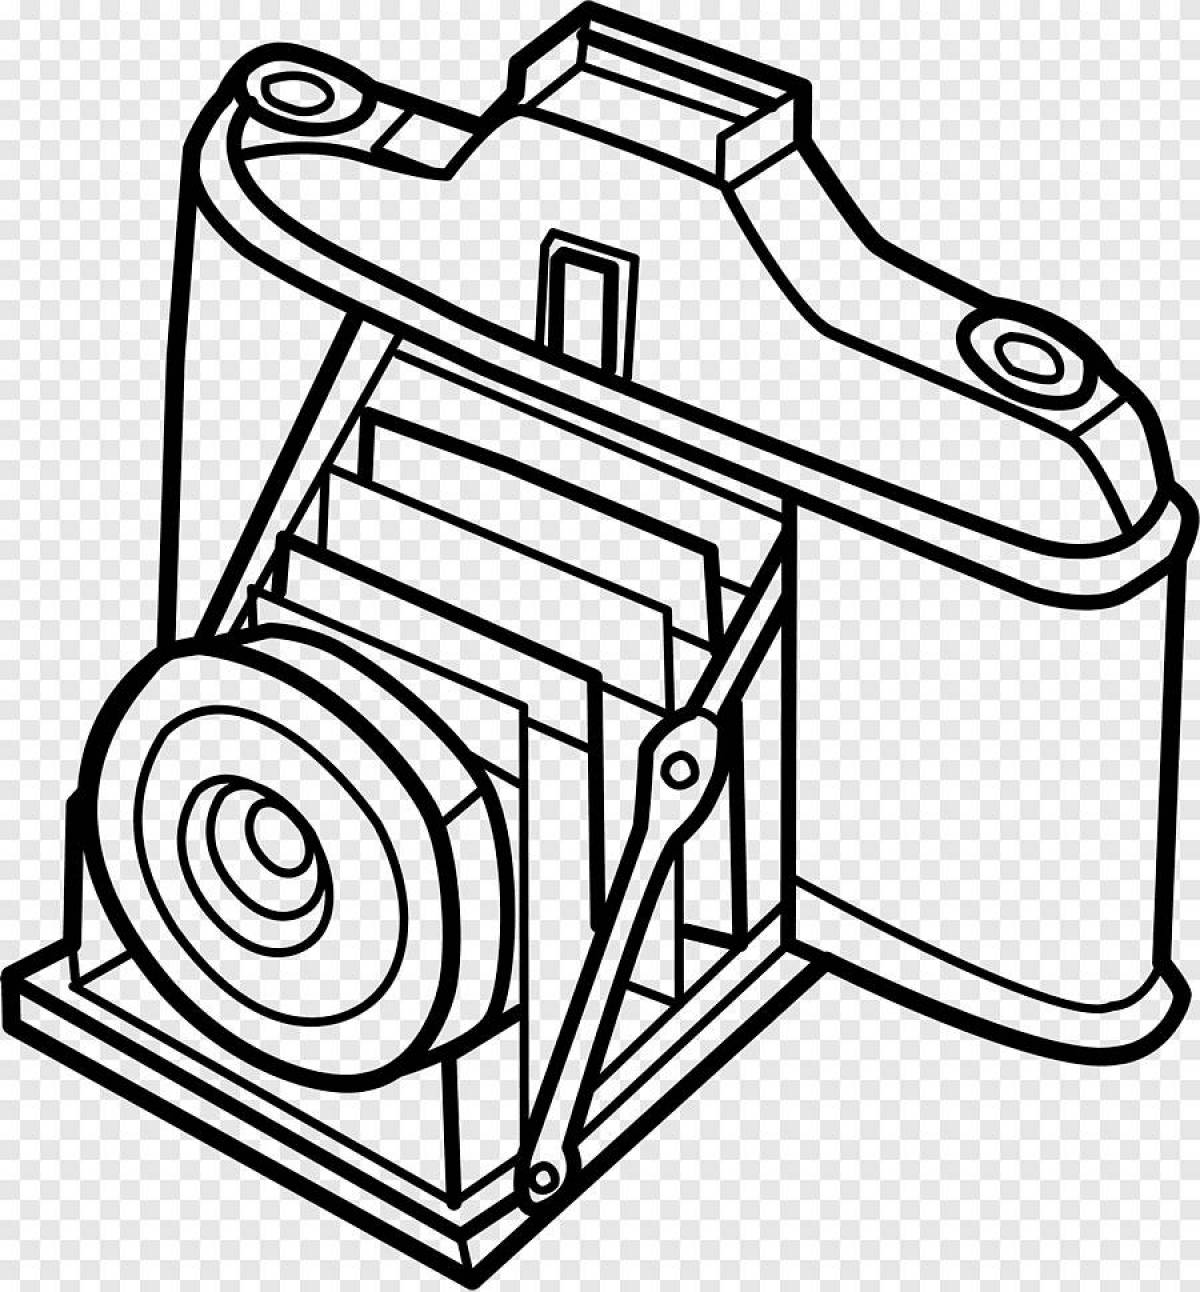 Анимированная страница раскраски камеры